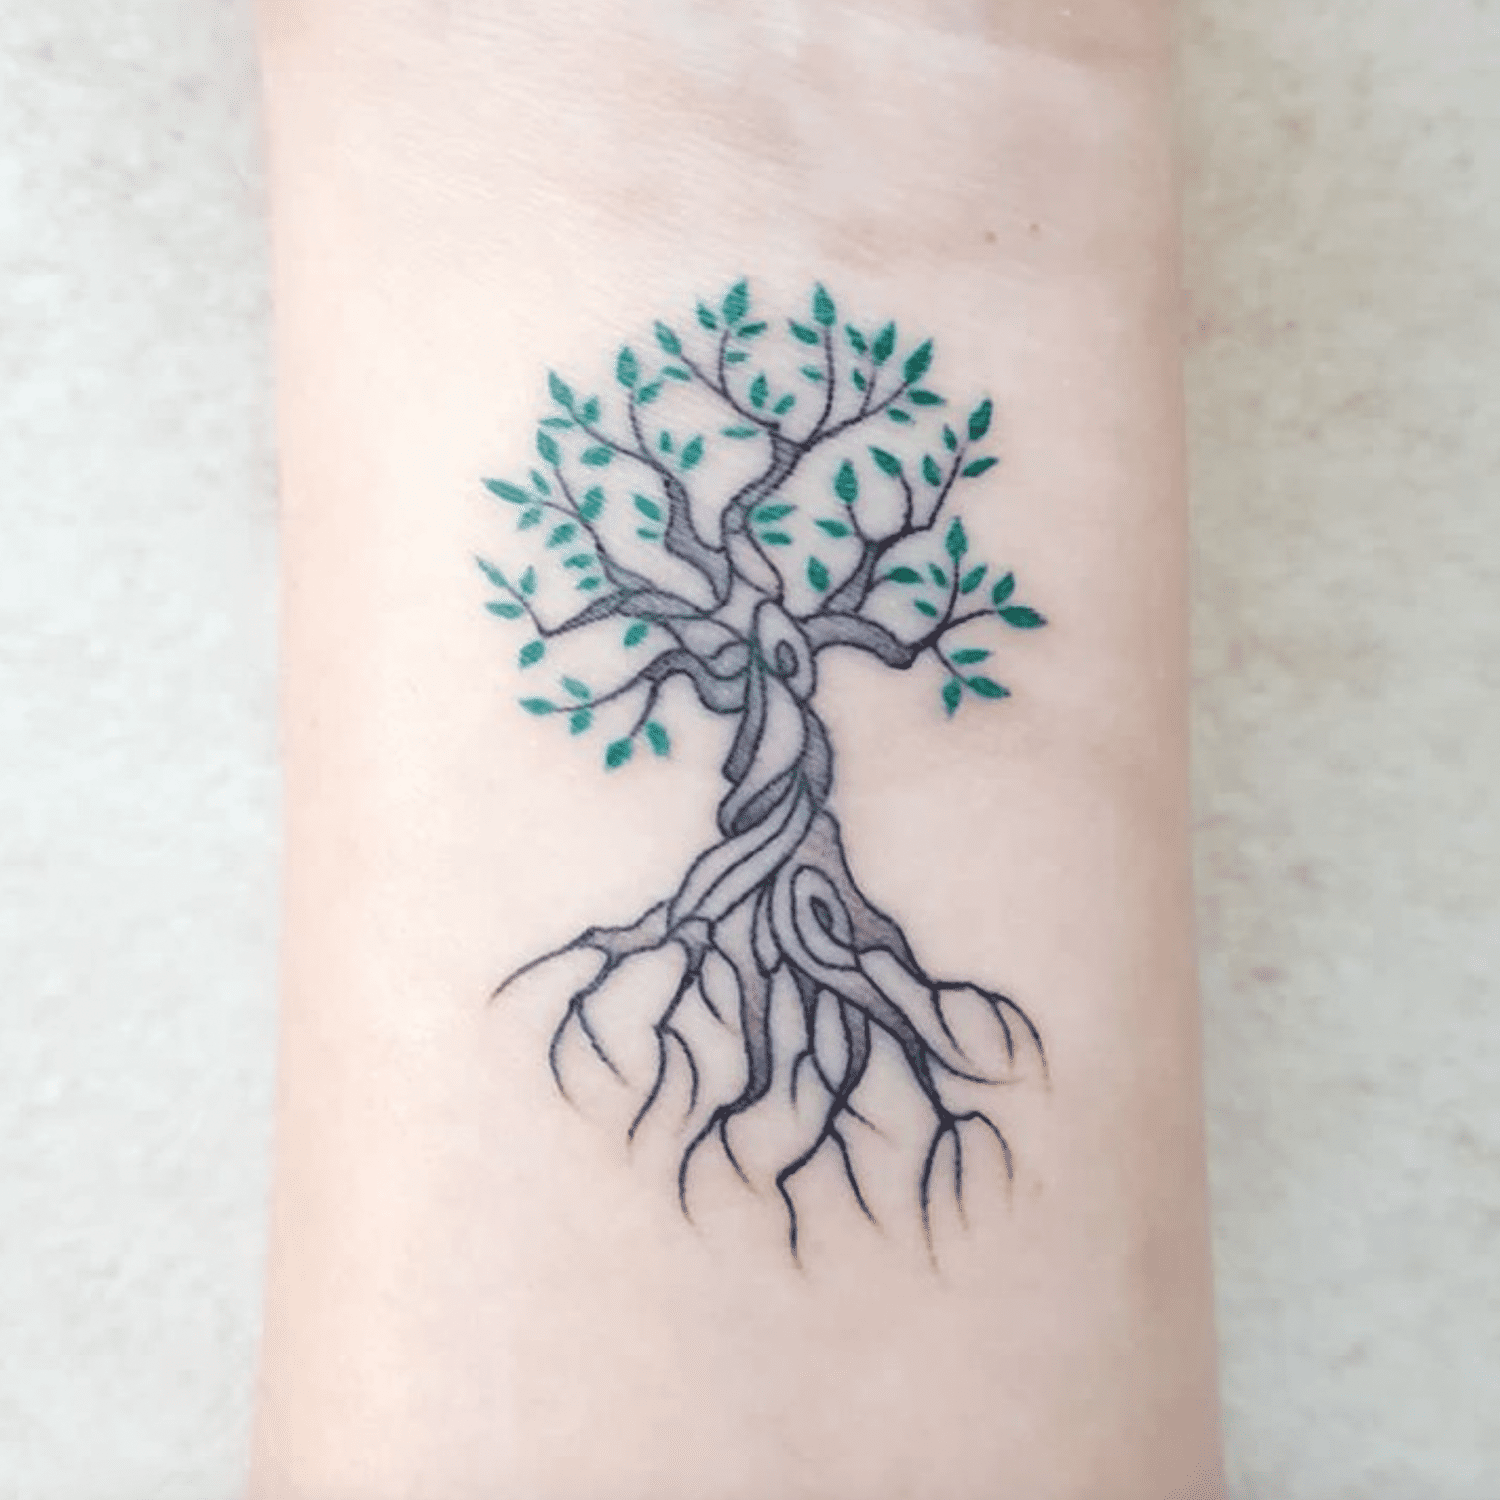 Tatuagem de árvore chique no antebraço